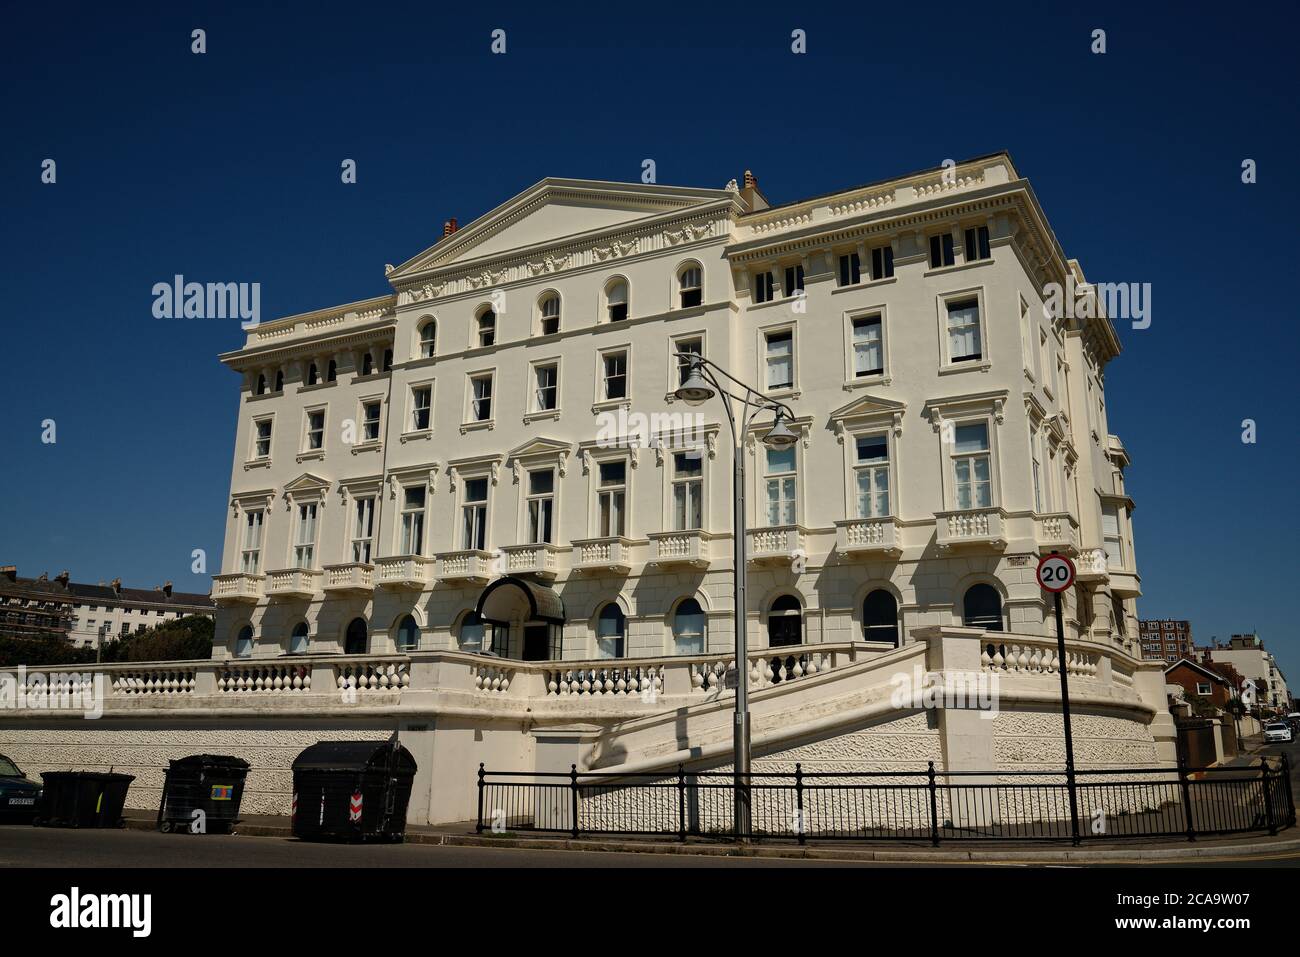 Brighton Hotel am Meer. Weißer Stuckputz Palladio-Architektur. Stockfoto